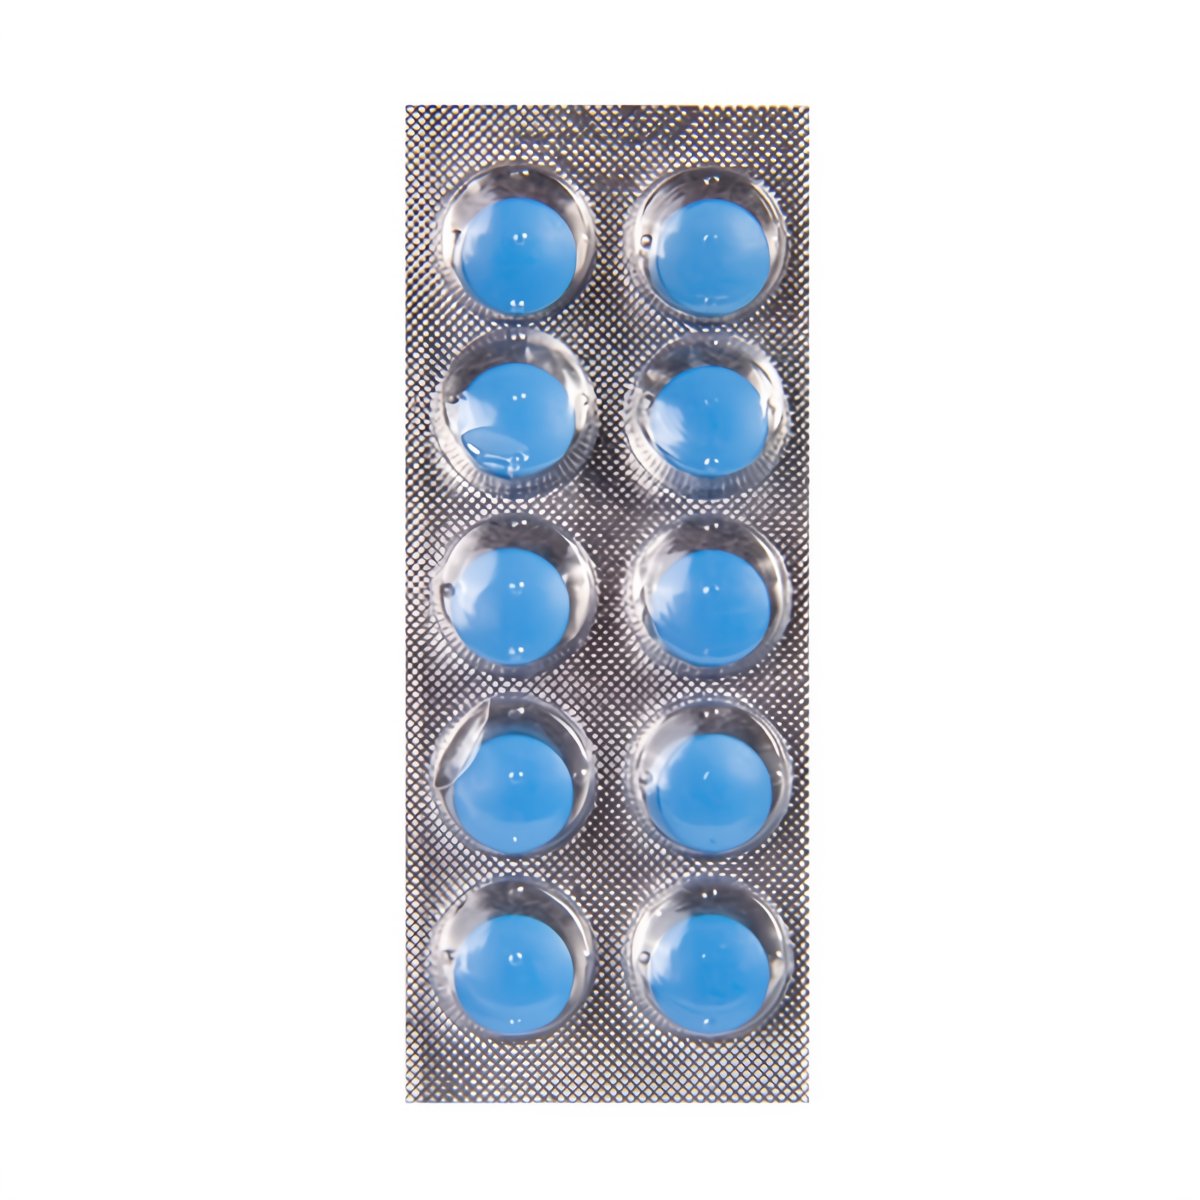 Blue Power - Stimulating Capsules - EroticToyzProducten,Veilige Seks, Verzorging Hulp,Stimulerende Middelen,Pillen en Supplementen,,MannelijkPharmquests by Shots